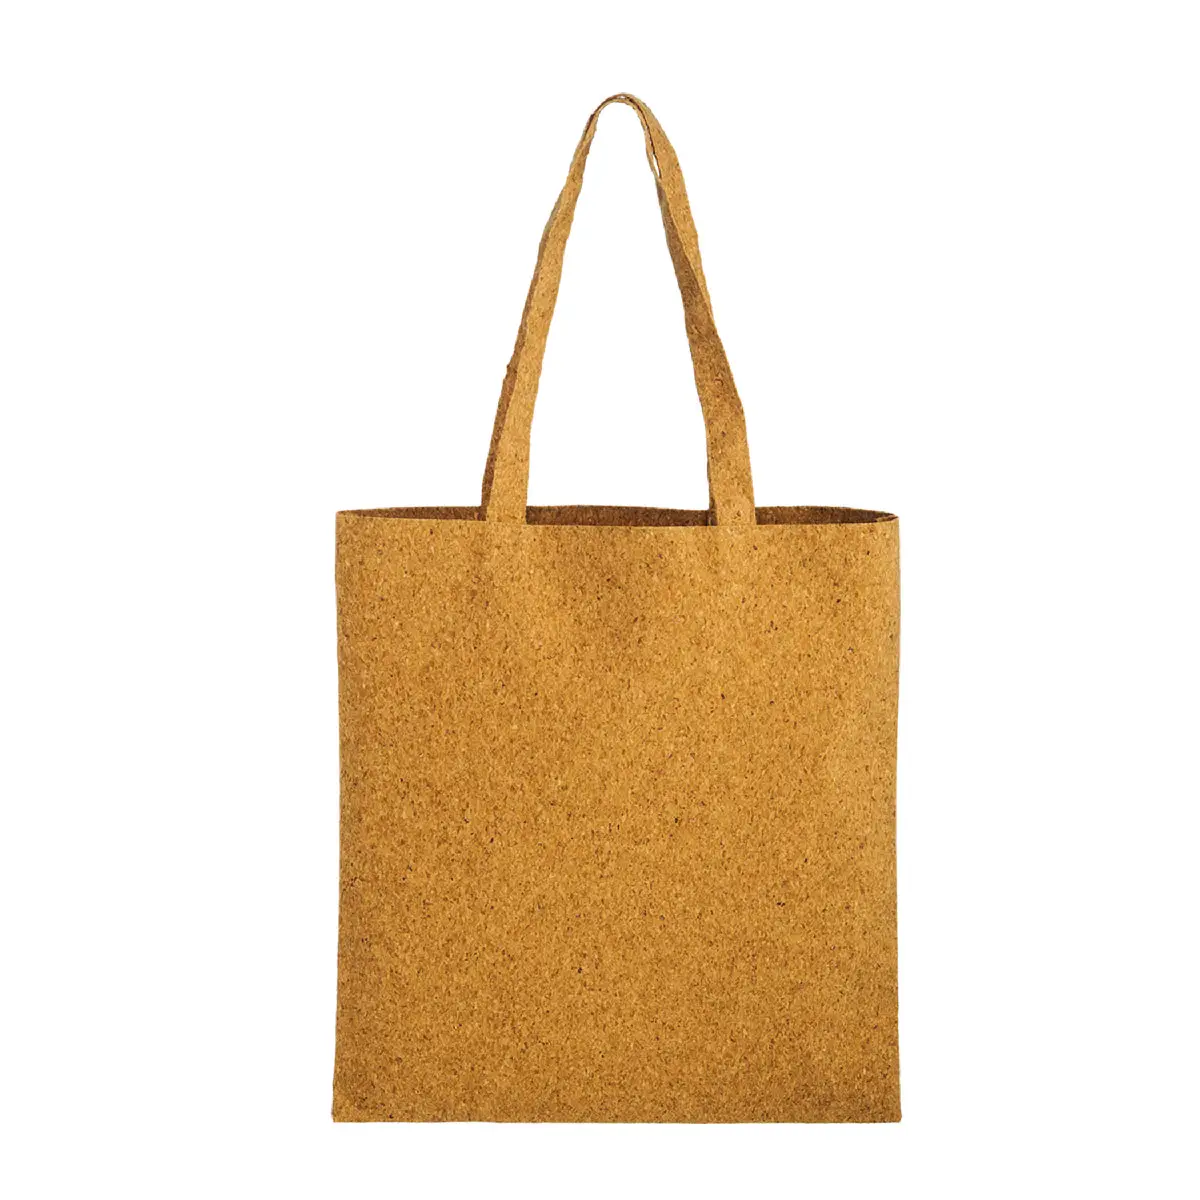 Eco Friendly Fashion Shopping Bag Cork Material Beach Tote Cork Bag